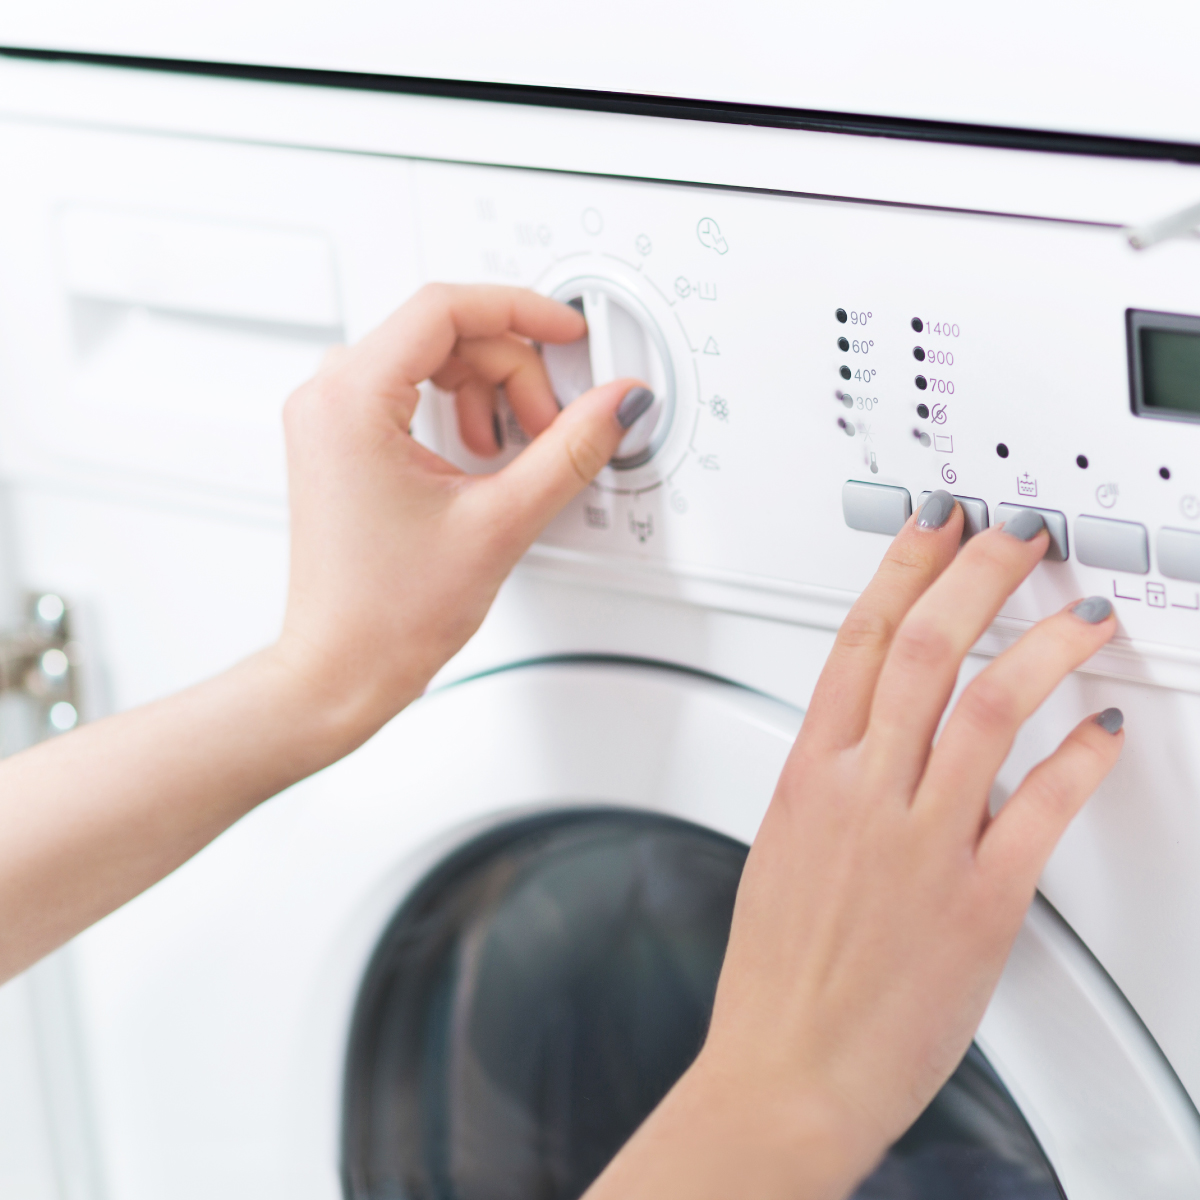 แนะนำเครื่องซักผ้าที่มีฟังก์ชันที่หลากหลาย และเหมาะสมกับการใช้งานของเรามากที่สุด